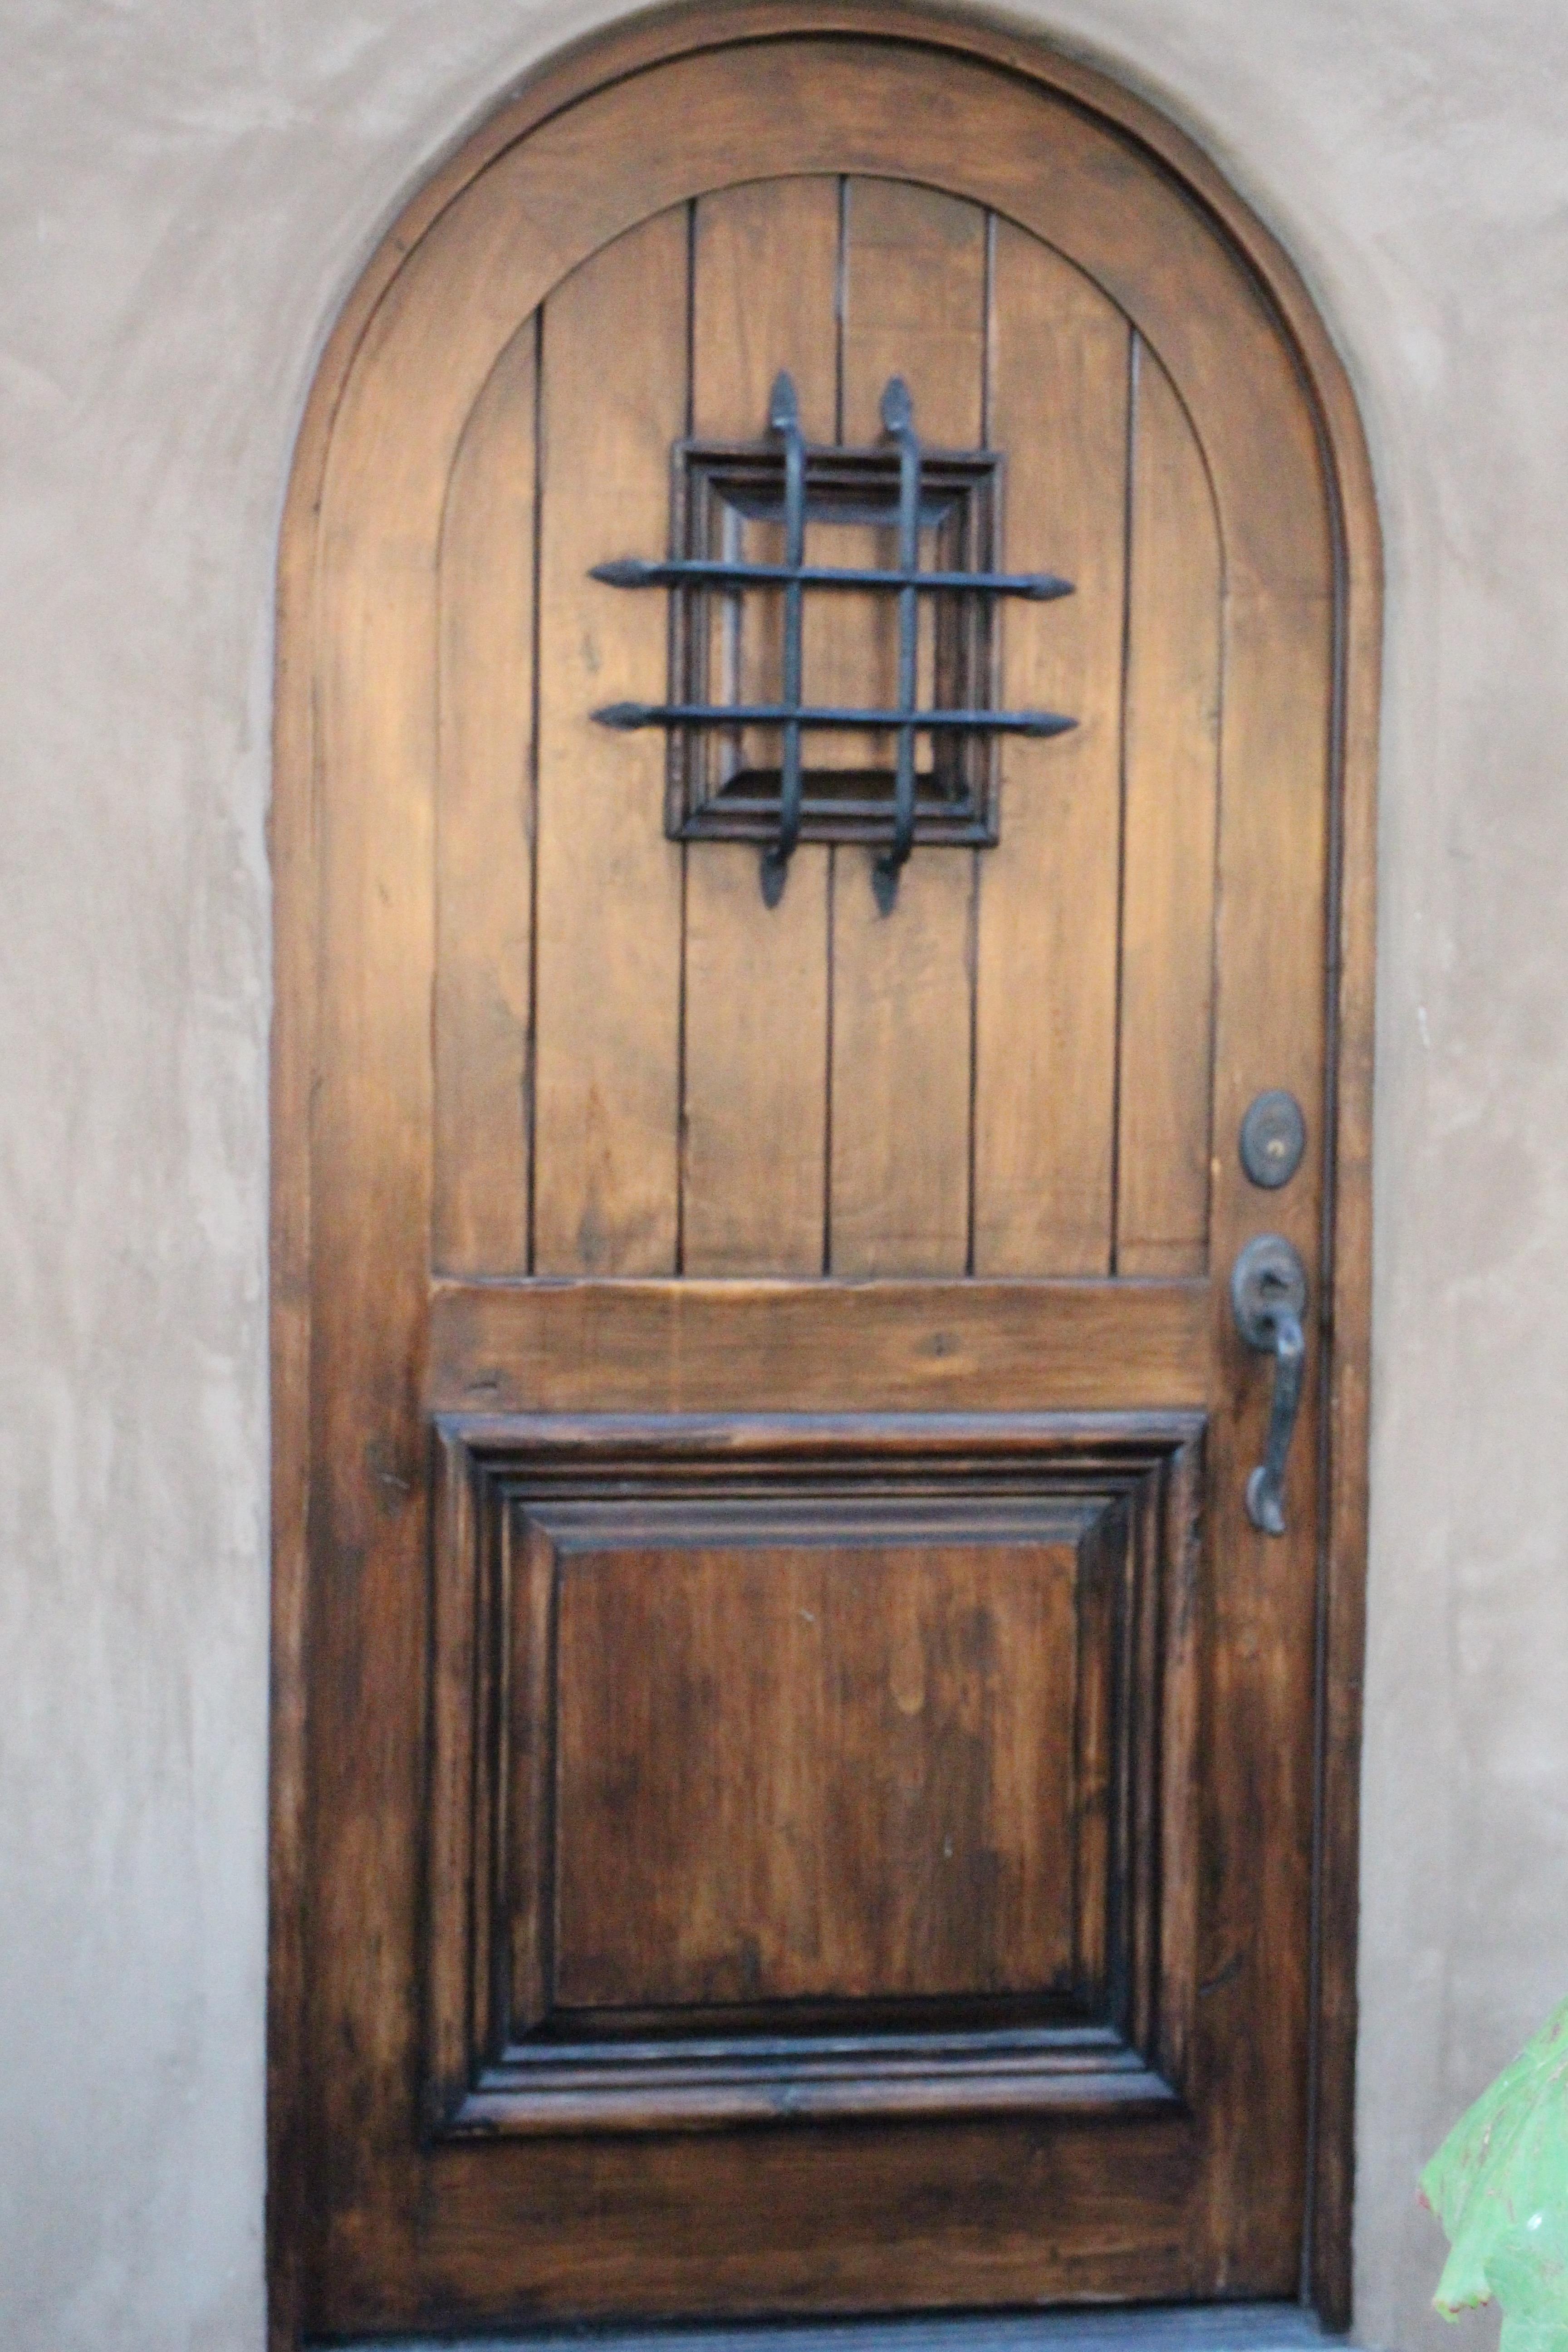 European inspired door and knob